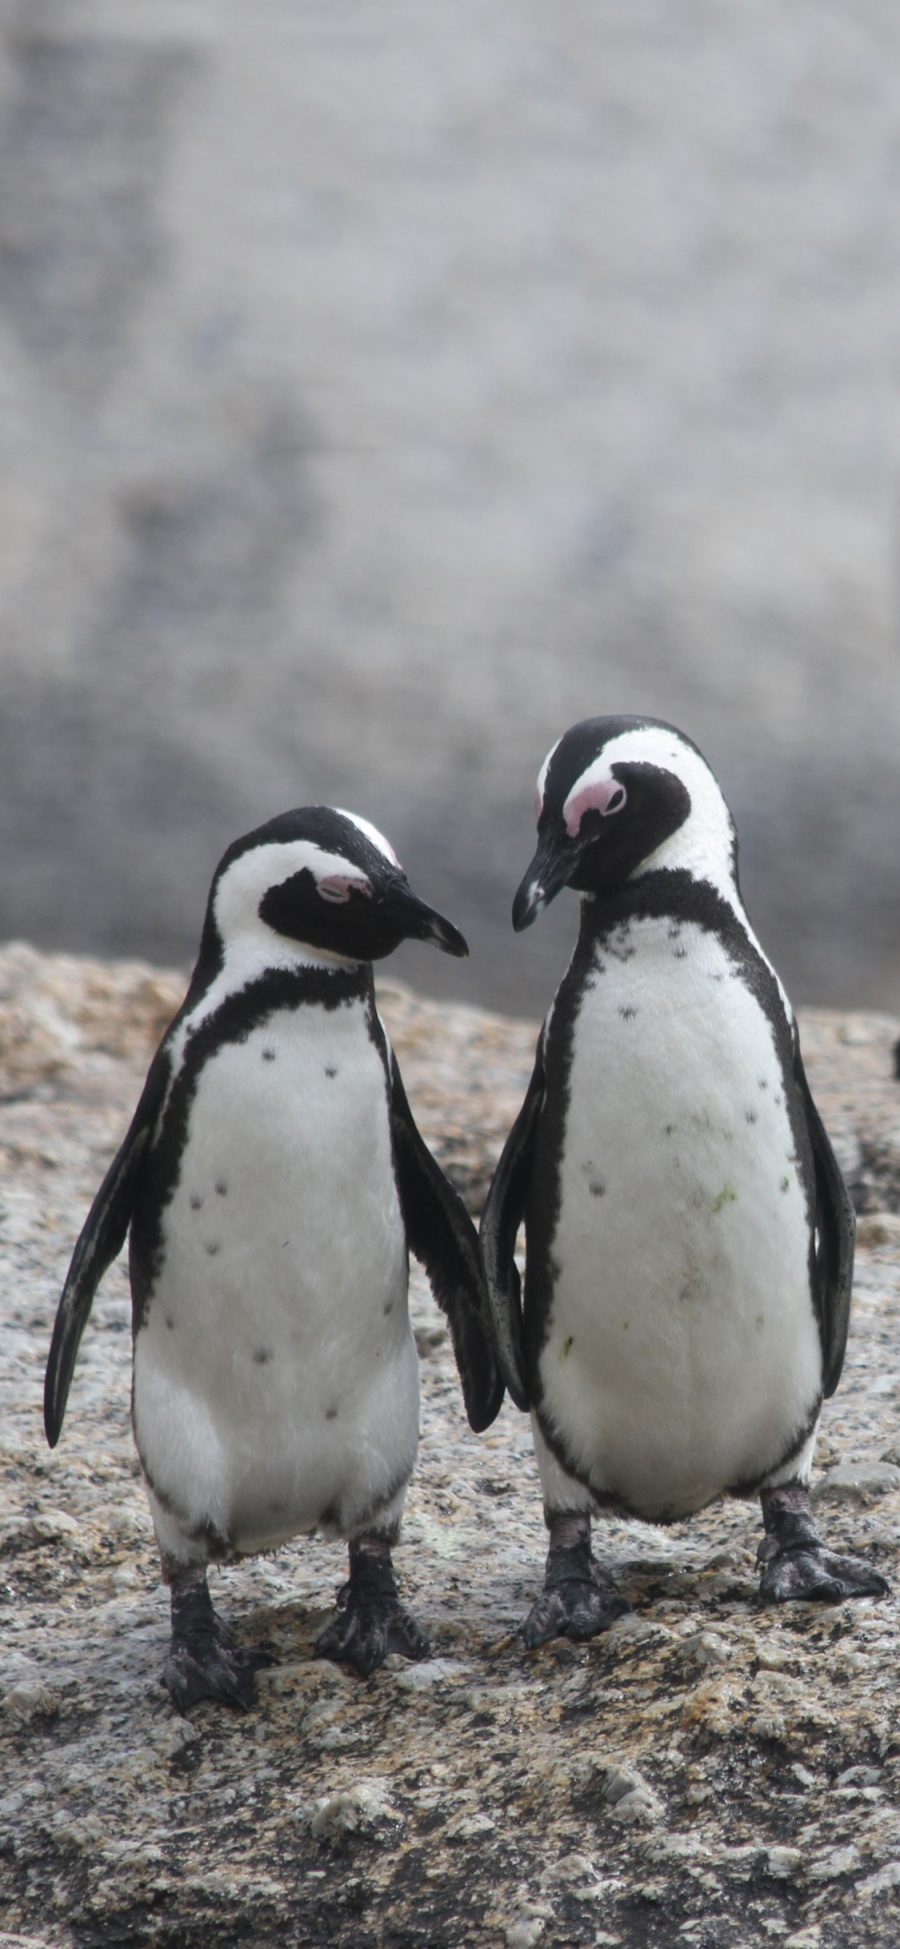 [2436×1125]保护动物 南极 小企鹅 幼崽 苹果手机壁纸图片